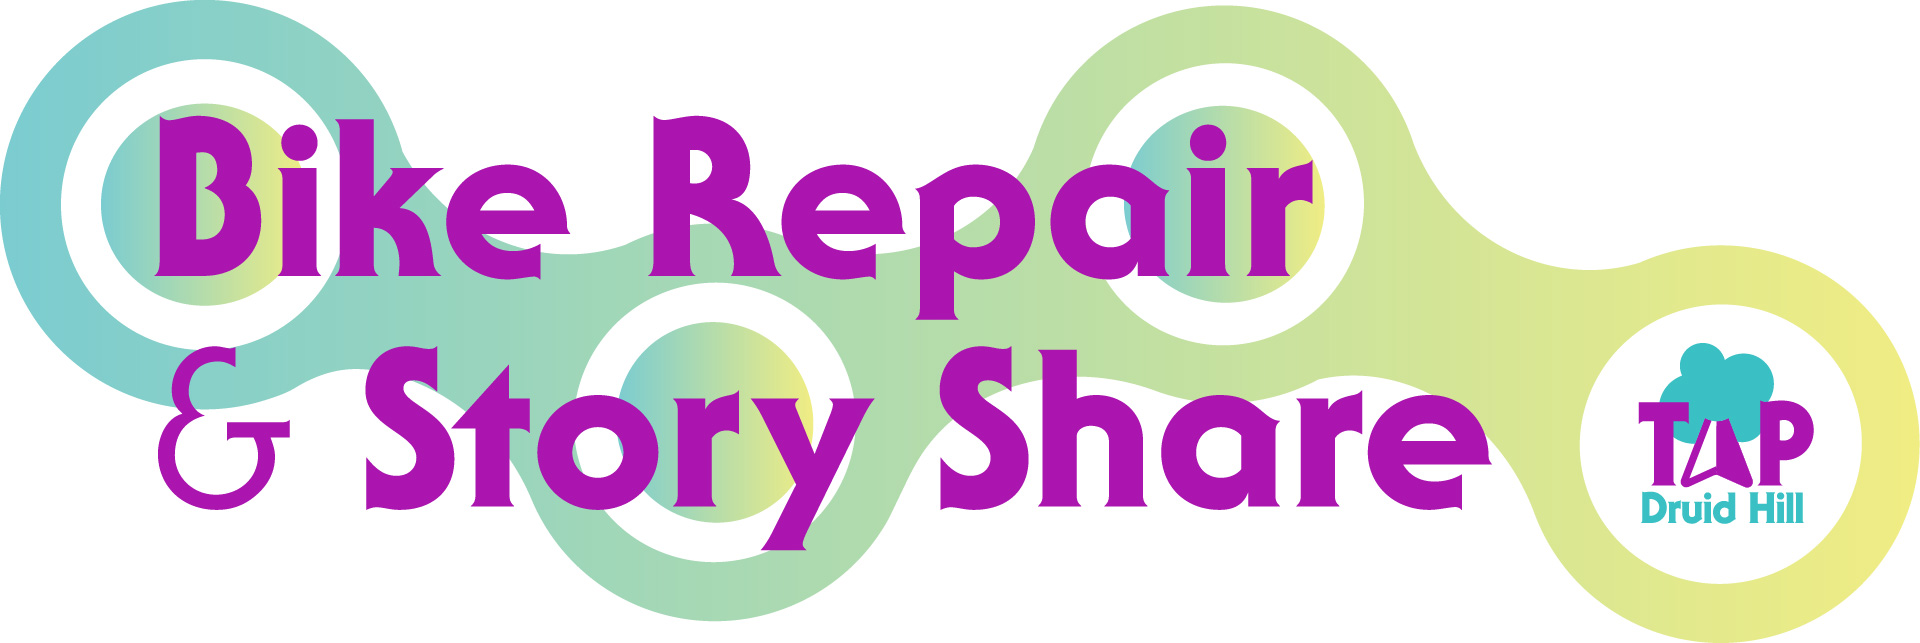 Bike Repair & Store Share chain logo